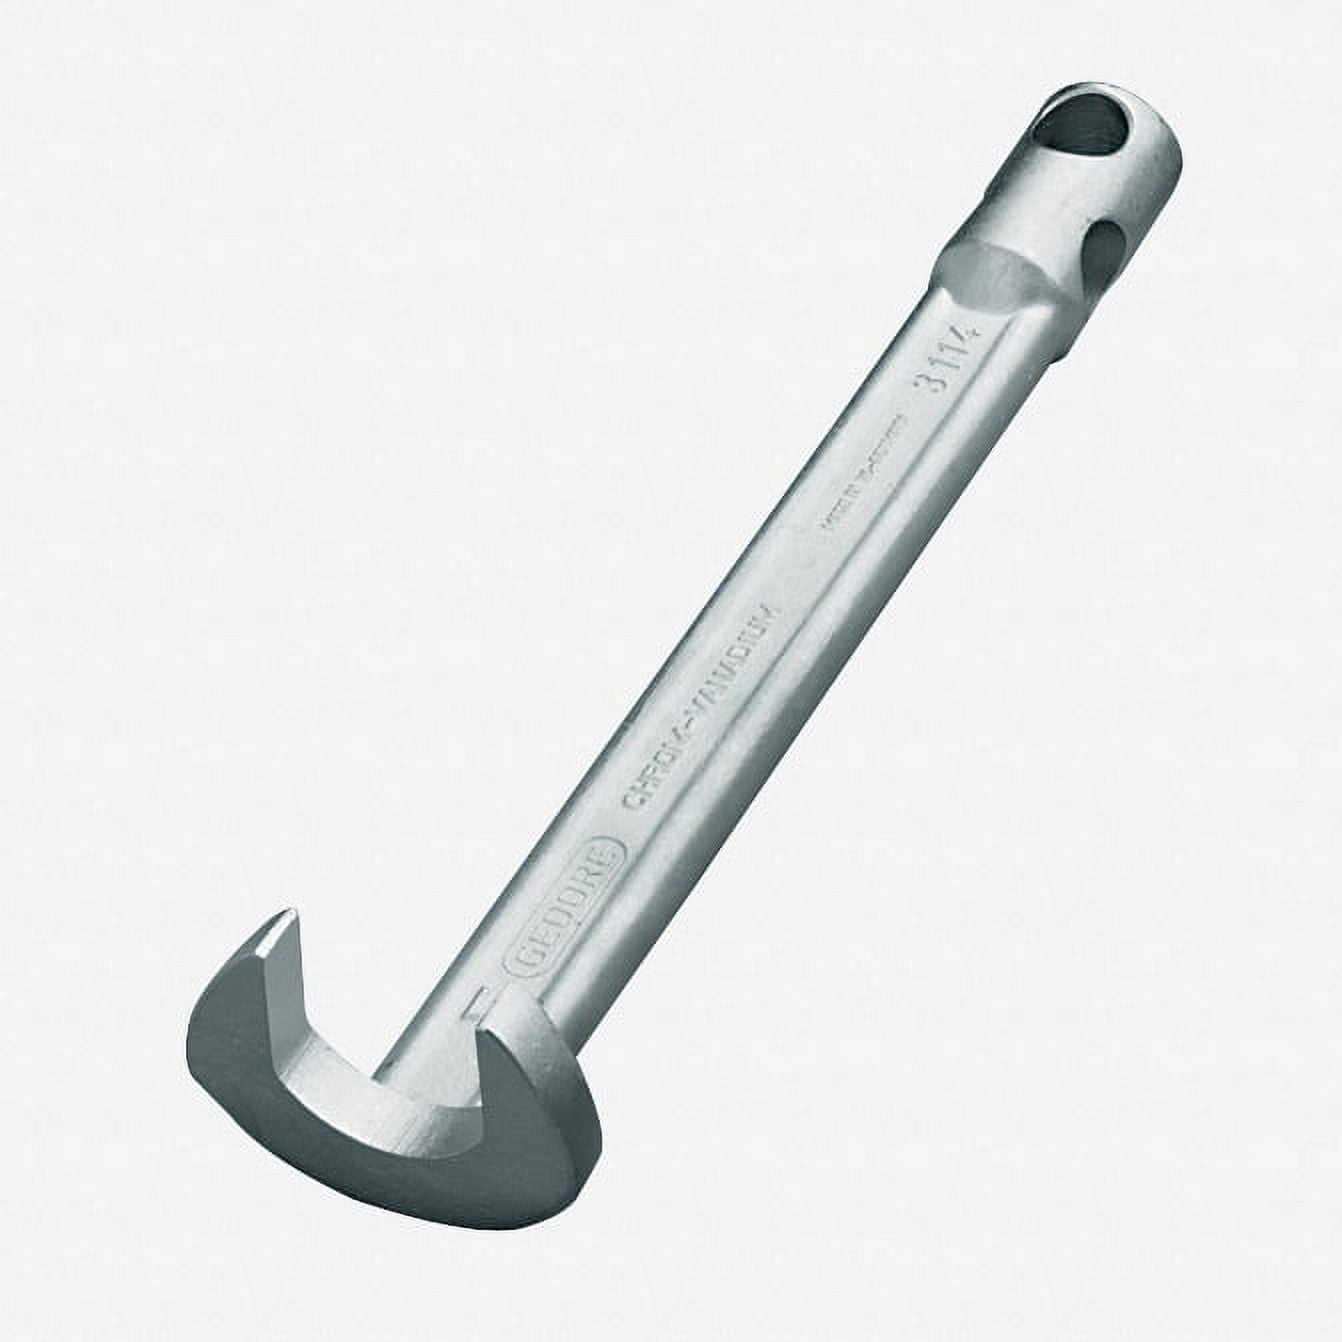 NKTIER Digital Adjustable Torque Wrench 5-25 NM 30mm Steel Open